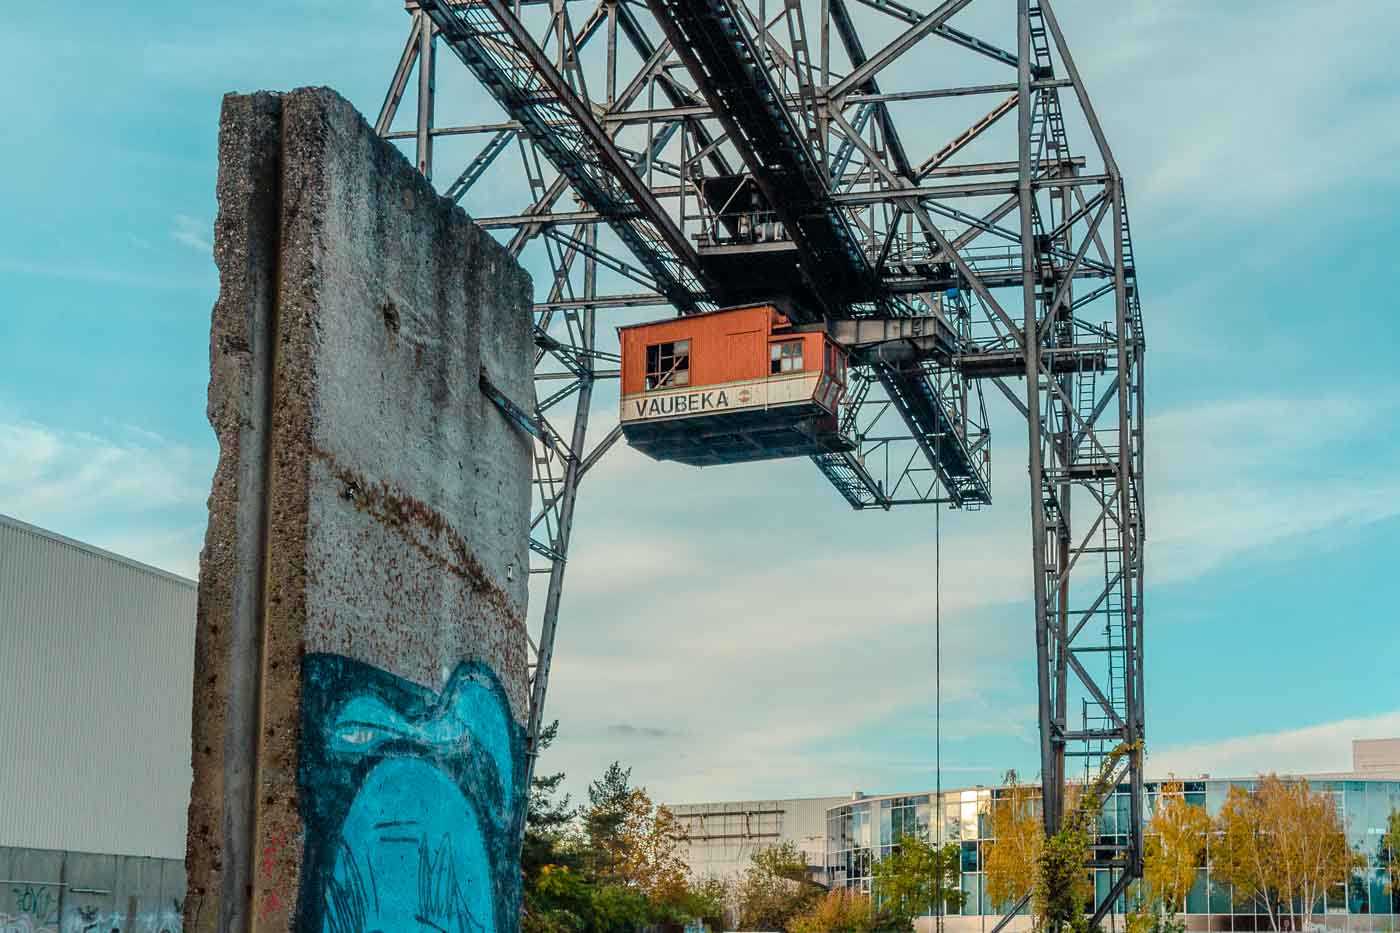 Na fronteira onde os bairros de Tempelhof e Neukölln se encontram em Berlim, você vai acabar encontrando uma colossal relíquia de ferro que se mantém de pé como uma lembrança do passado turbulento da cidade. Conhecido como Vaubeka Crane, essa gigantesca lembrança de um passado industrial simboliza a resiliência durante uma crise.